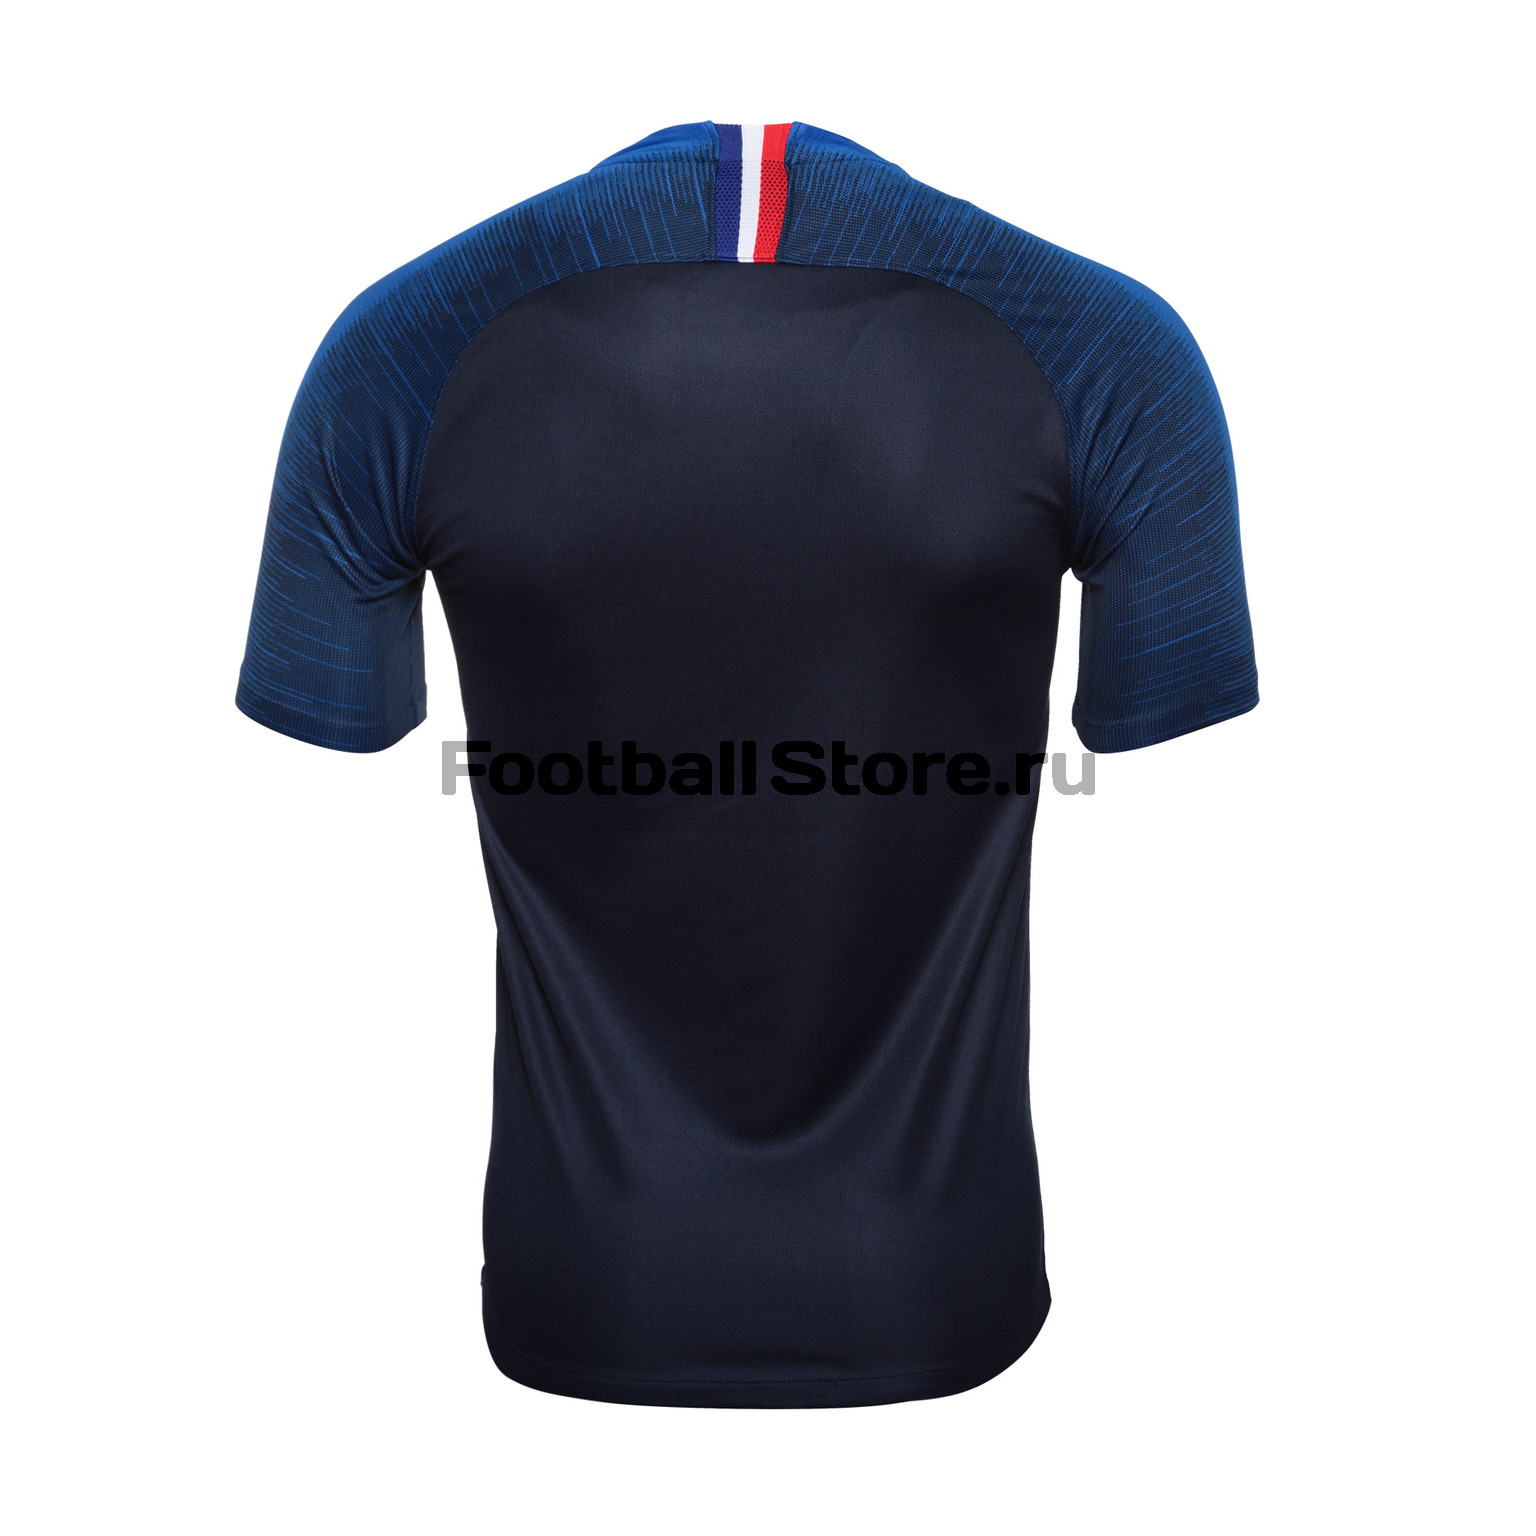 Футболка игровая Nike сборной Франции домашняя 893872-451